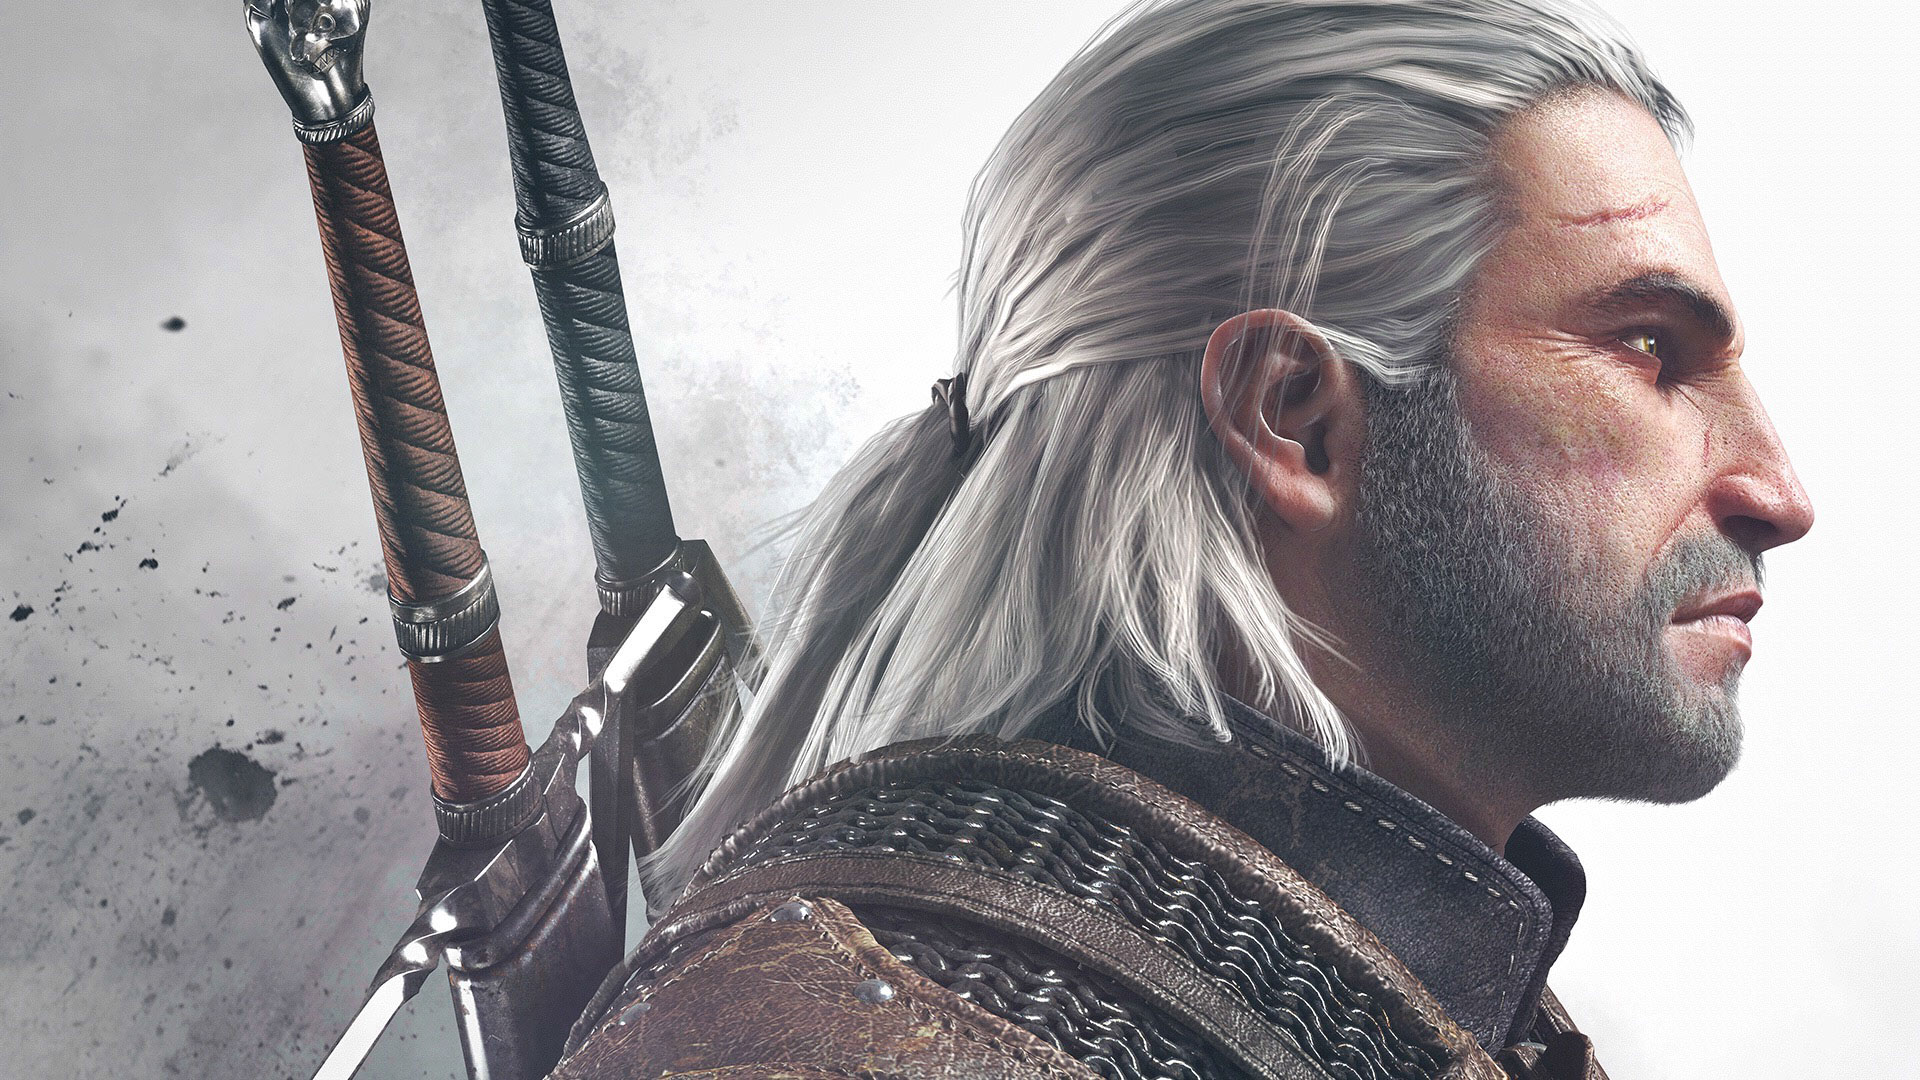 The Witcher 3 ganha novo trailer para a E3 2014 e data de lançamento